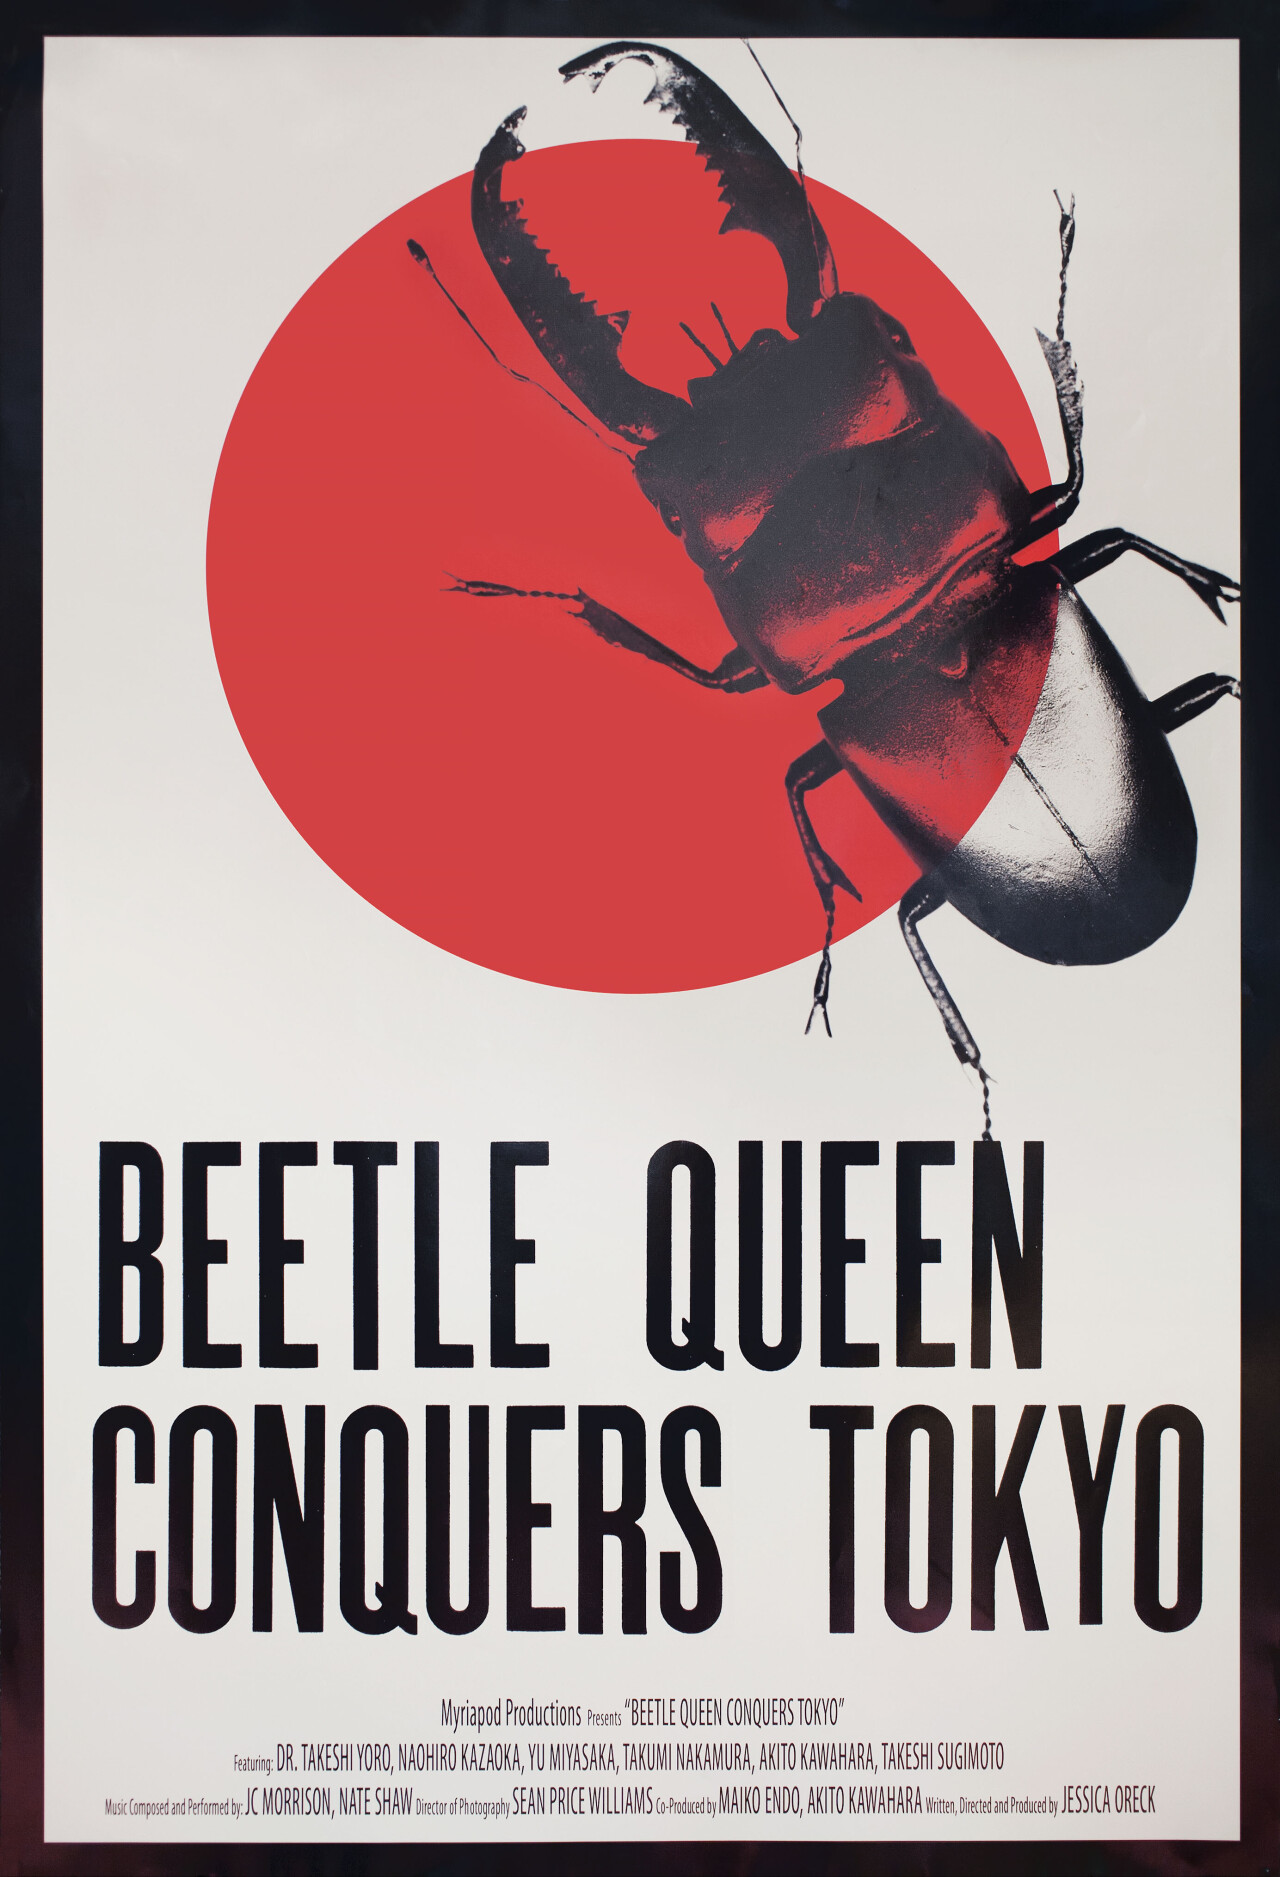 Королева жуков завоевывает Токио (Beetle Queen Conquers Tokyo, 2009), режиссёр Джессика Орек, американский постер к фильму (графический дизайн, 2010 год)